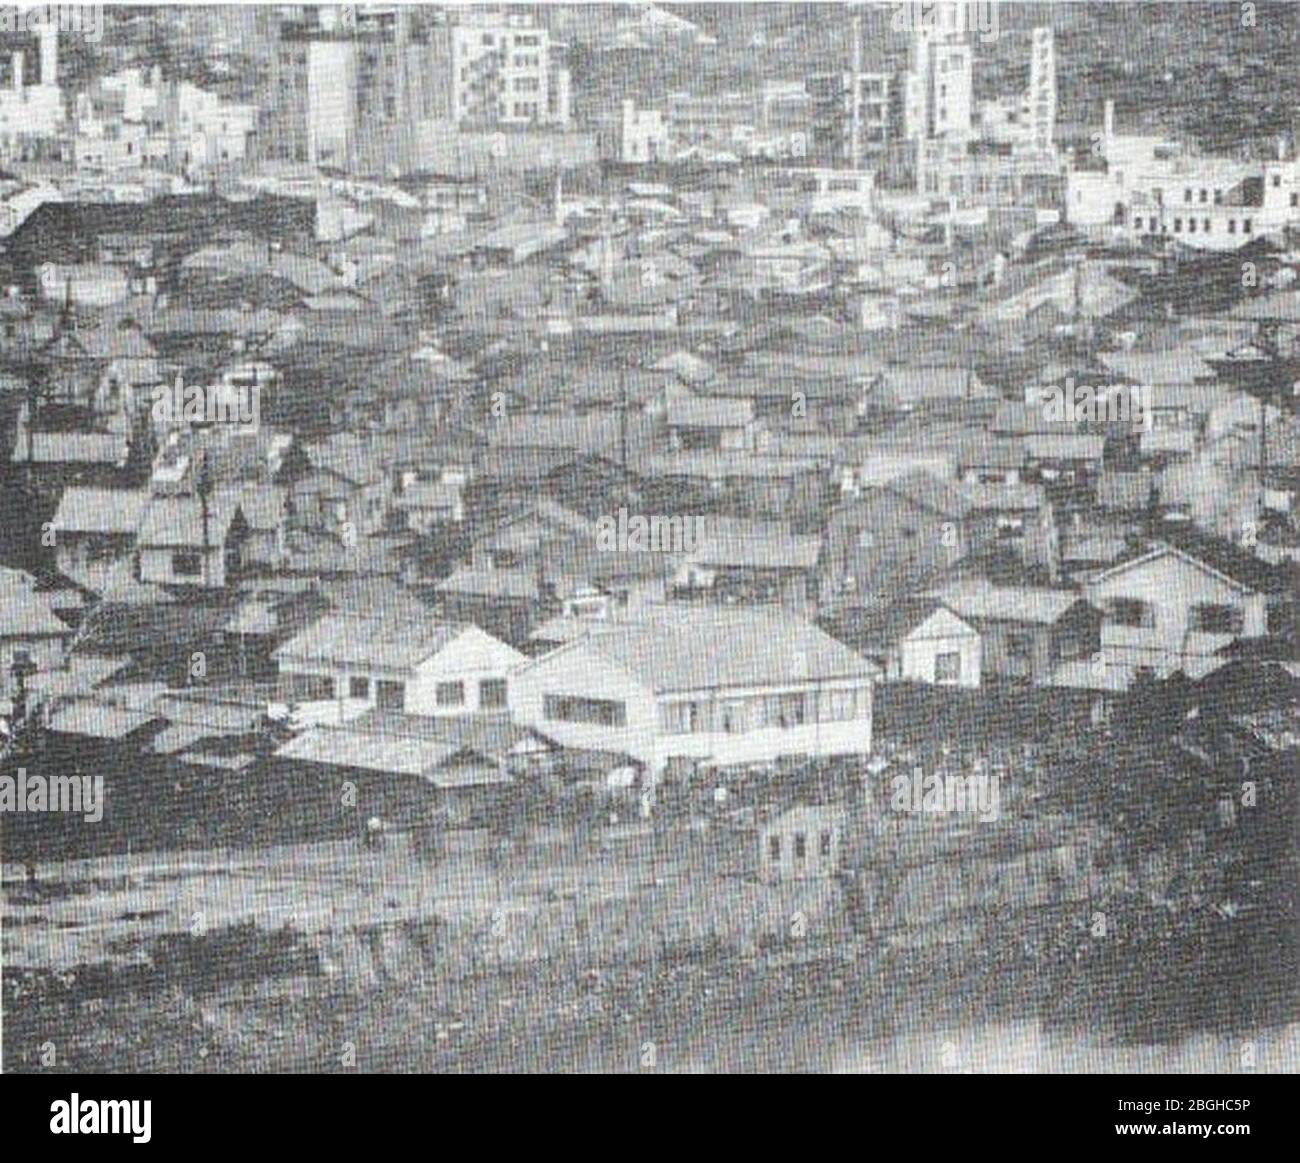 Hirosima before the atomic bombing. Stock Photo